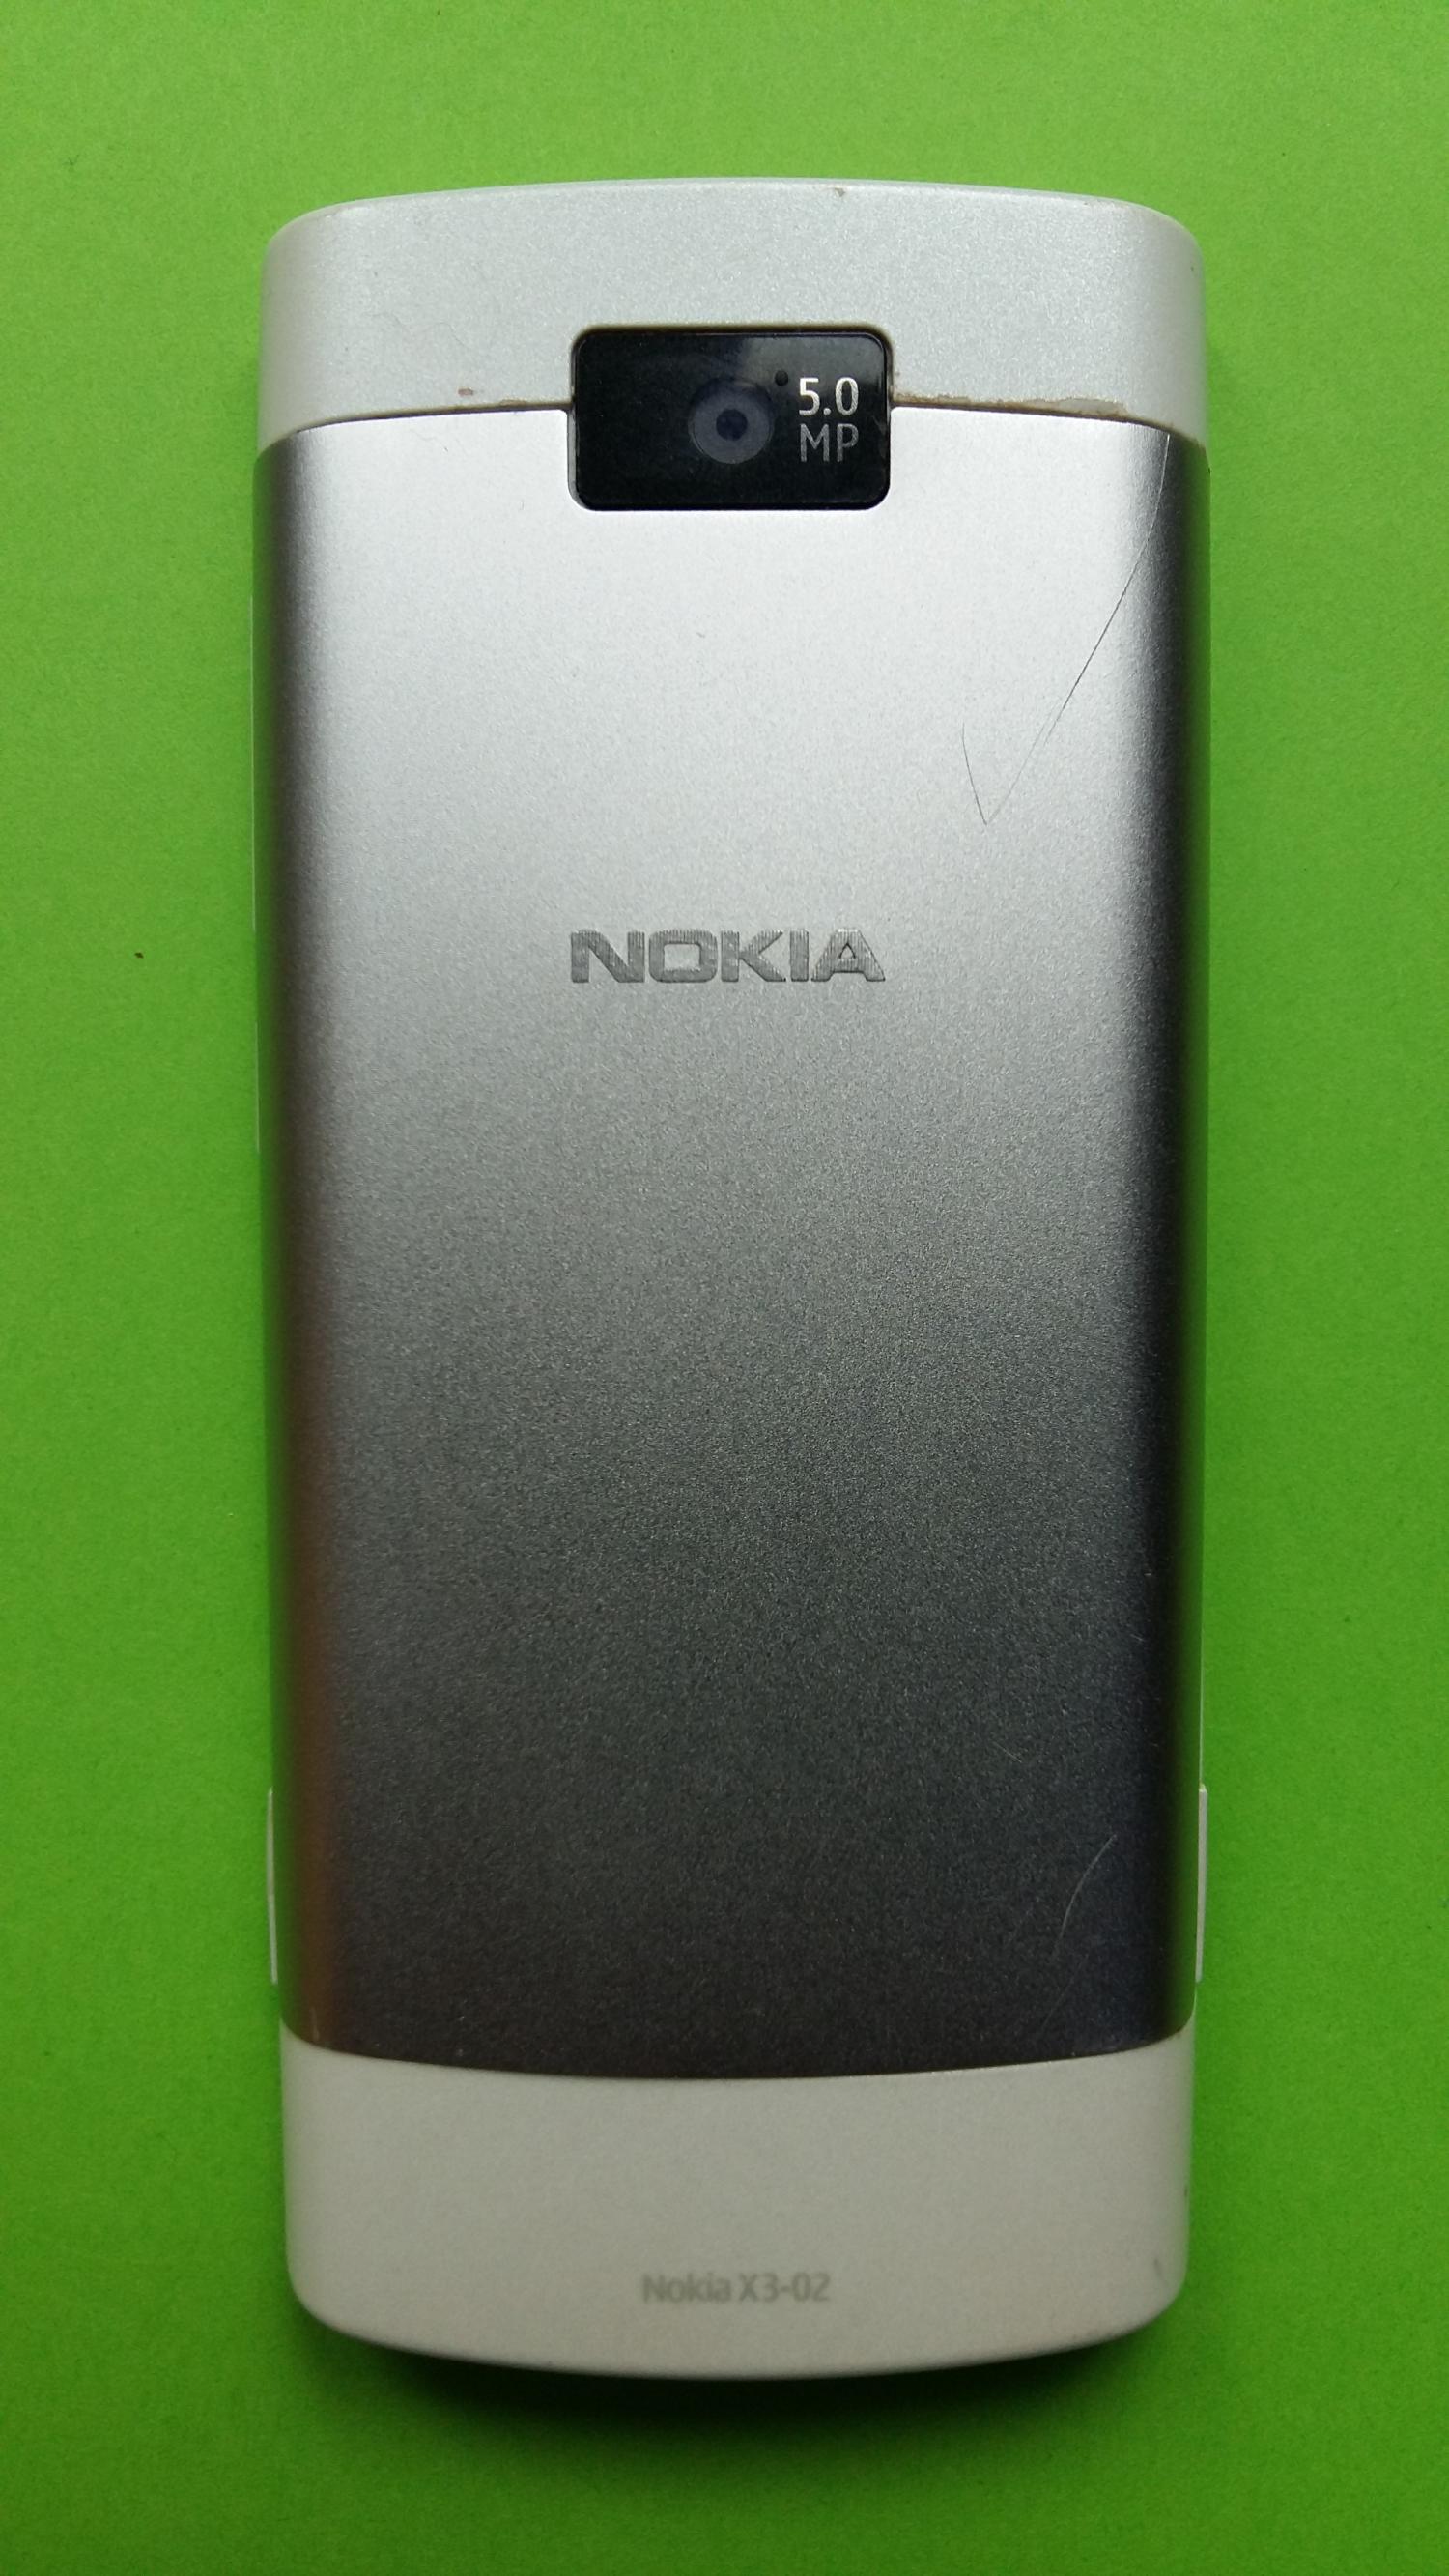 image-7299915-Nokia X3-02.5 (1)2.jpg